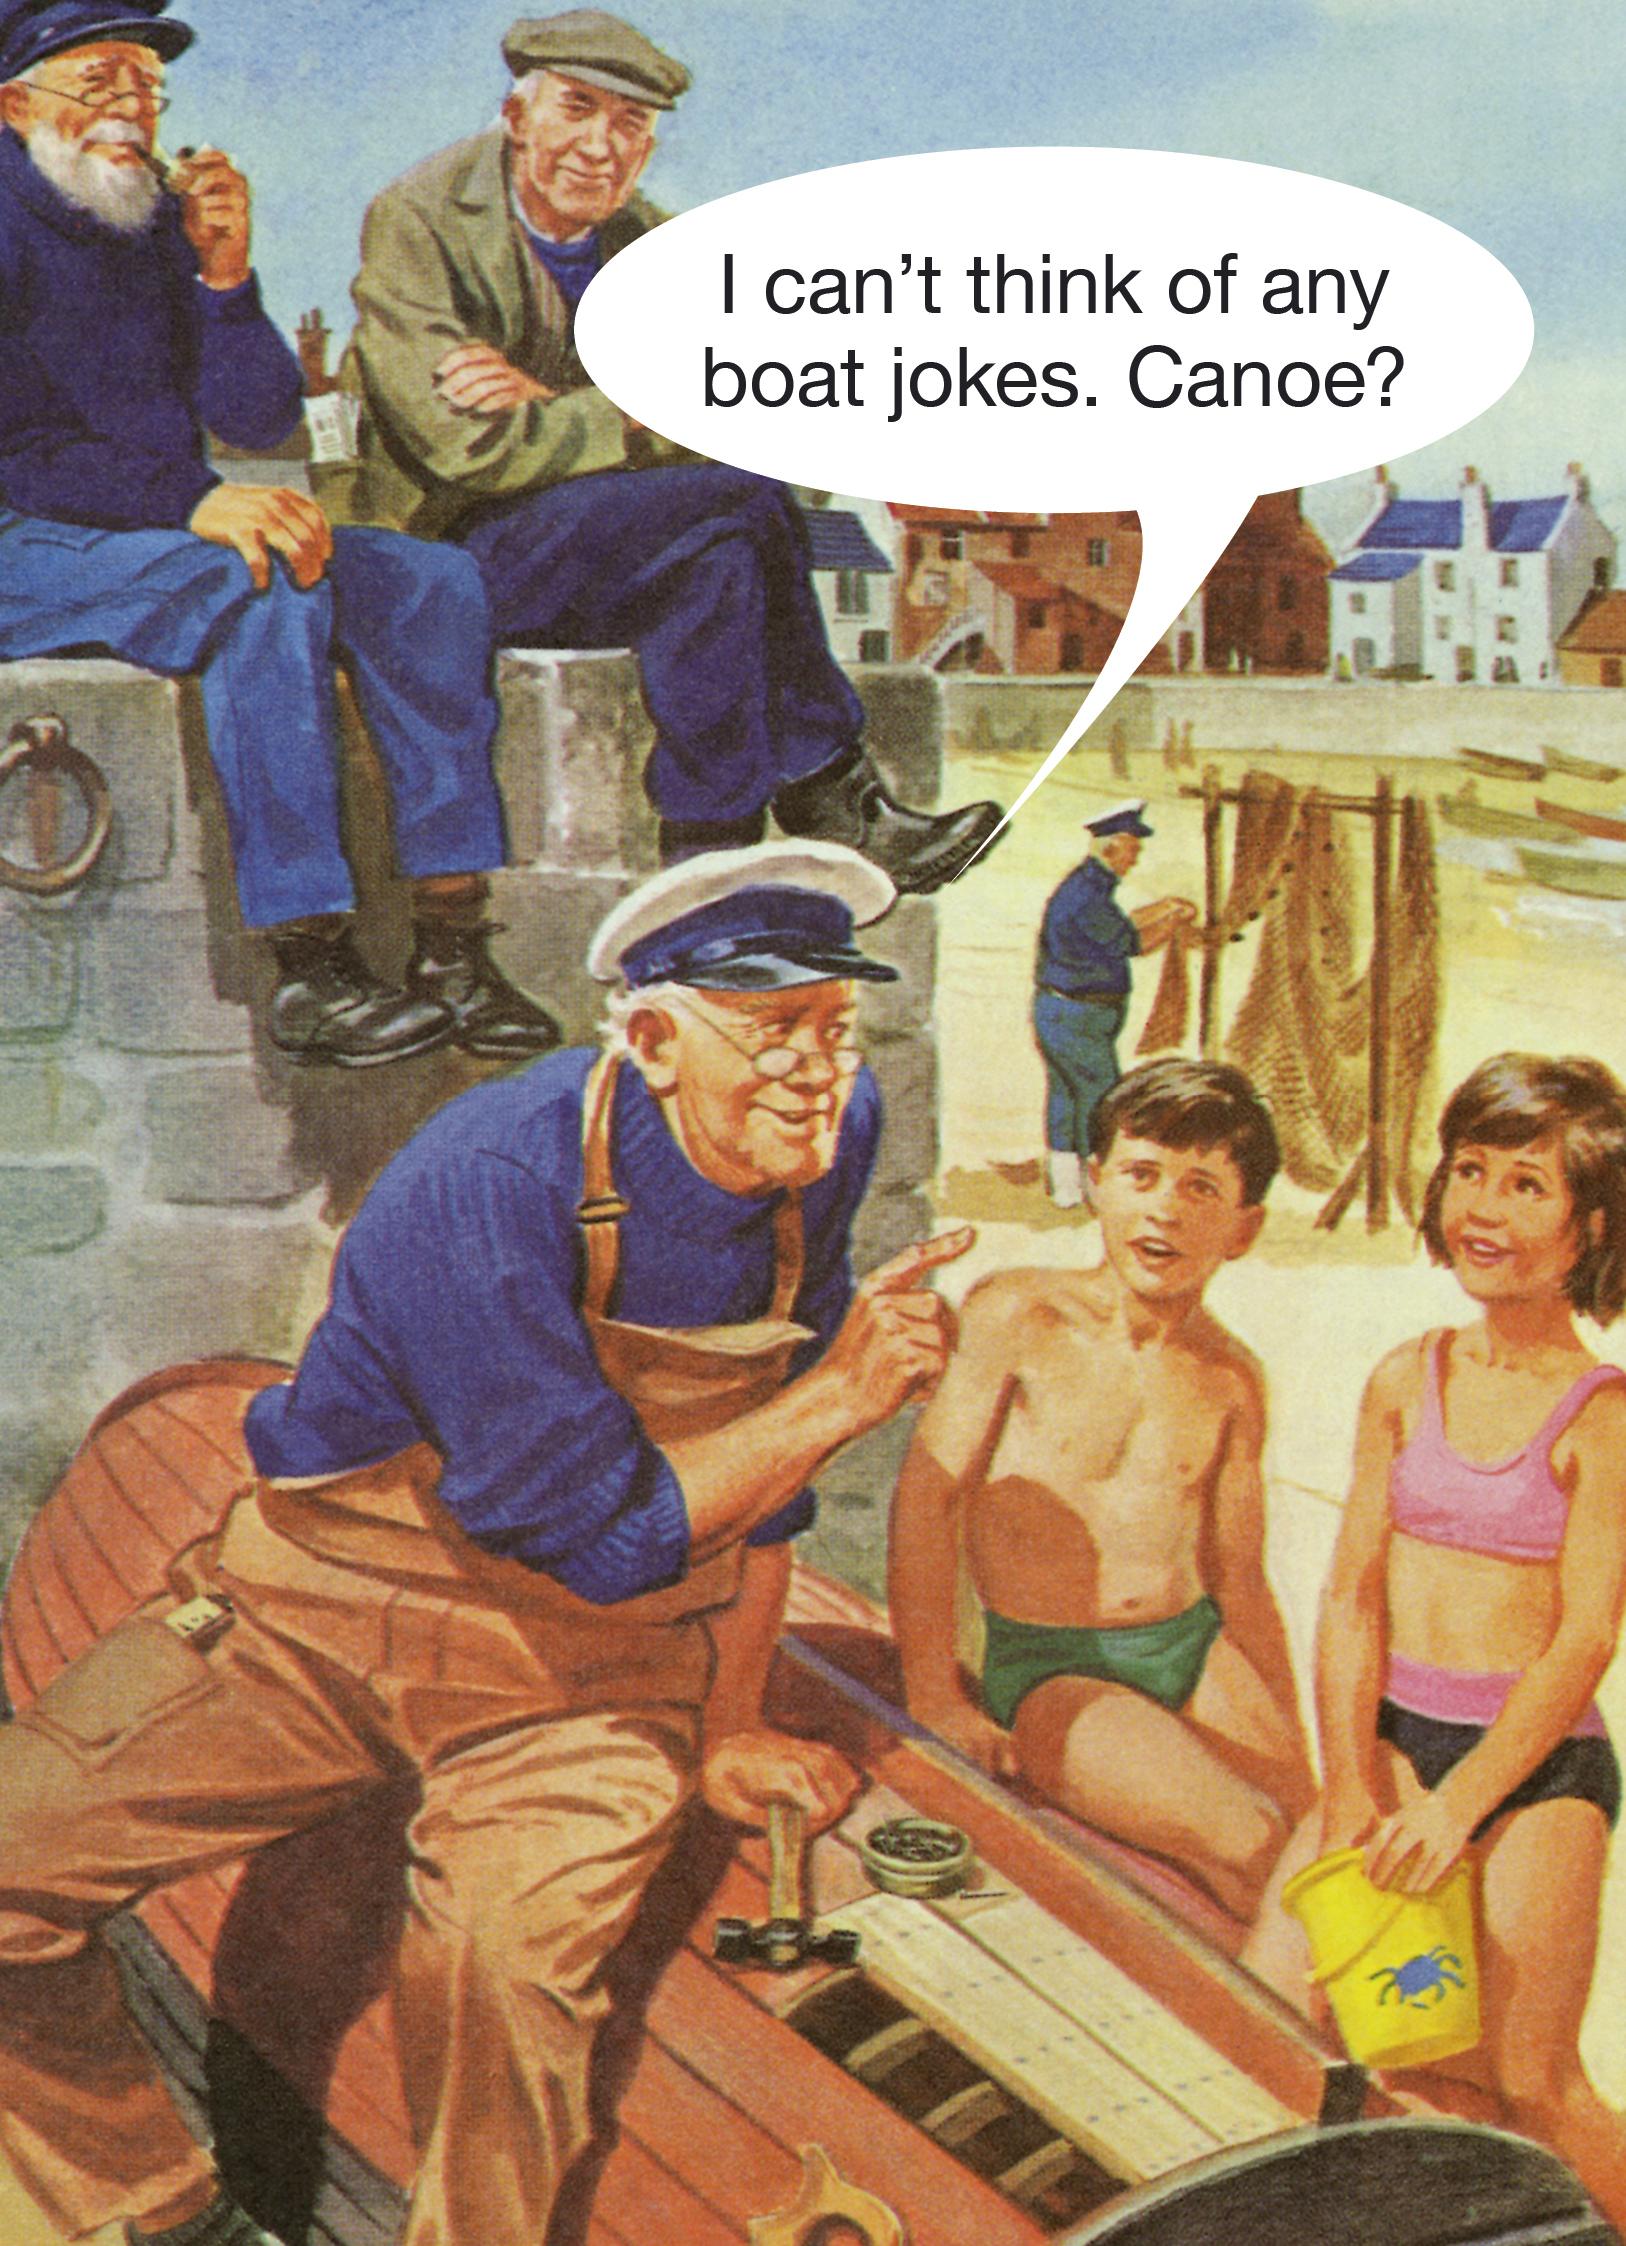 I can't think of any boat jokes, Canoe?